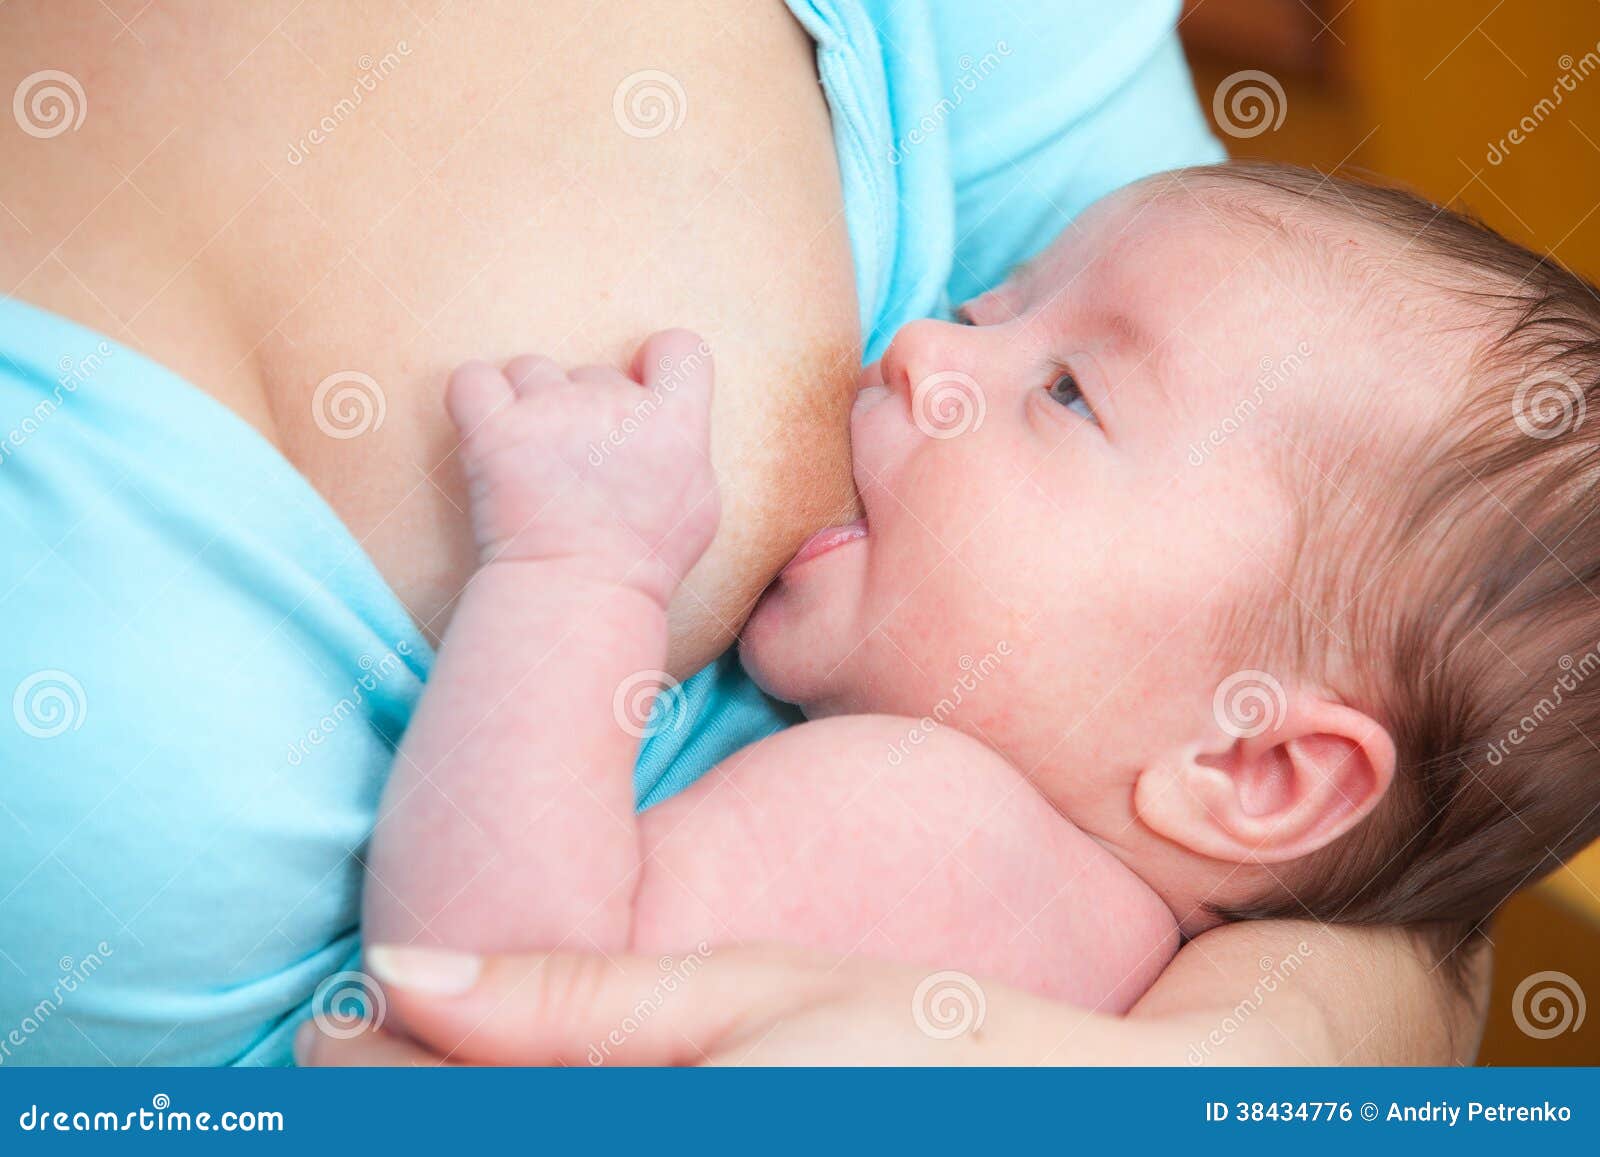 у кого какое время новорожденный сосет грудь фото 7